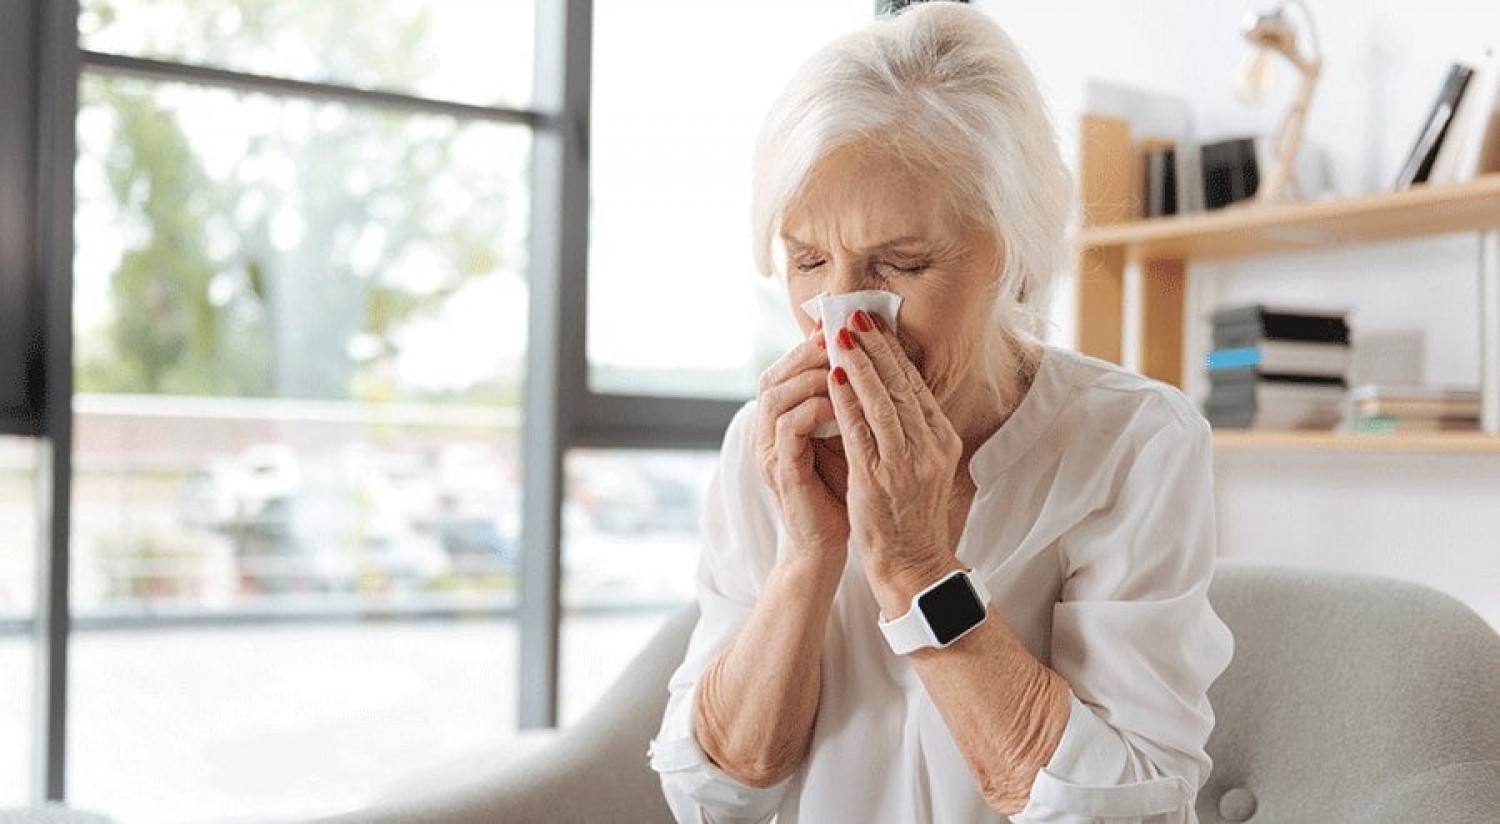 Omikron, influenza vagy allergia - Bárki meg tudja különböztetni tesztelés nélkül is